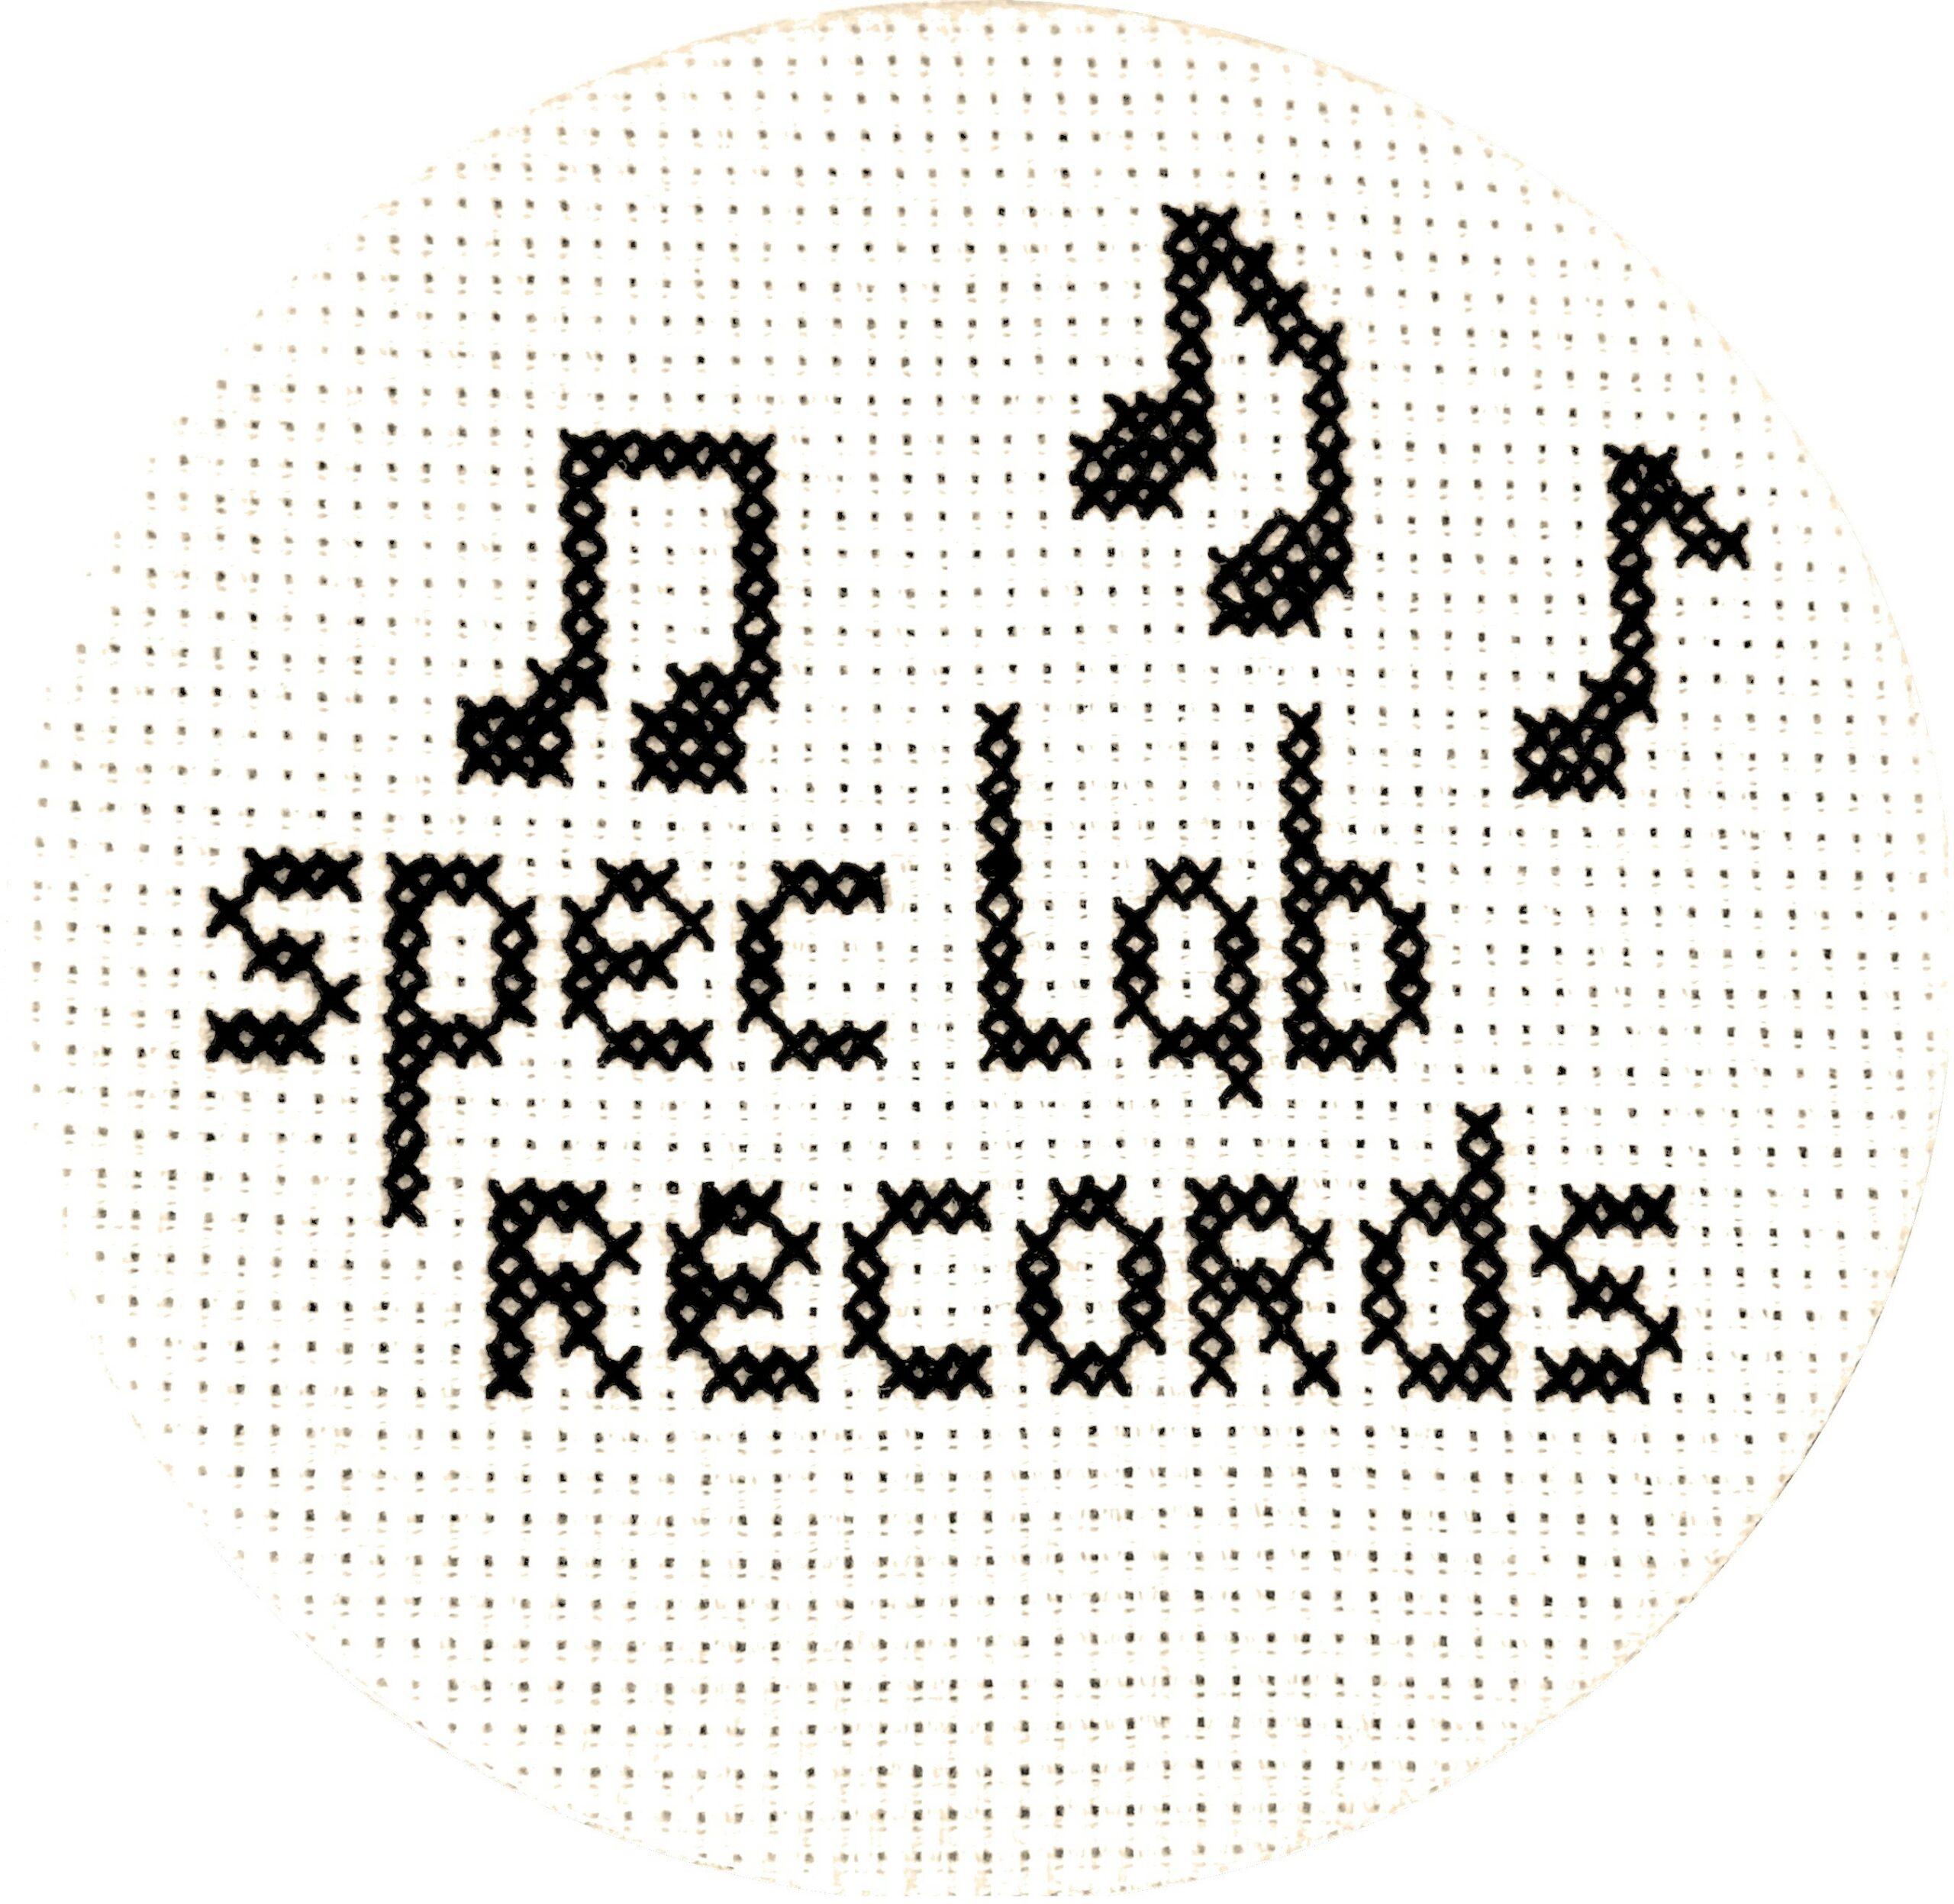 Spec Lab Records